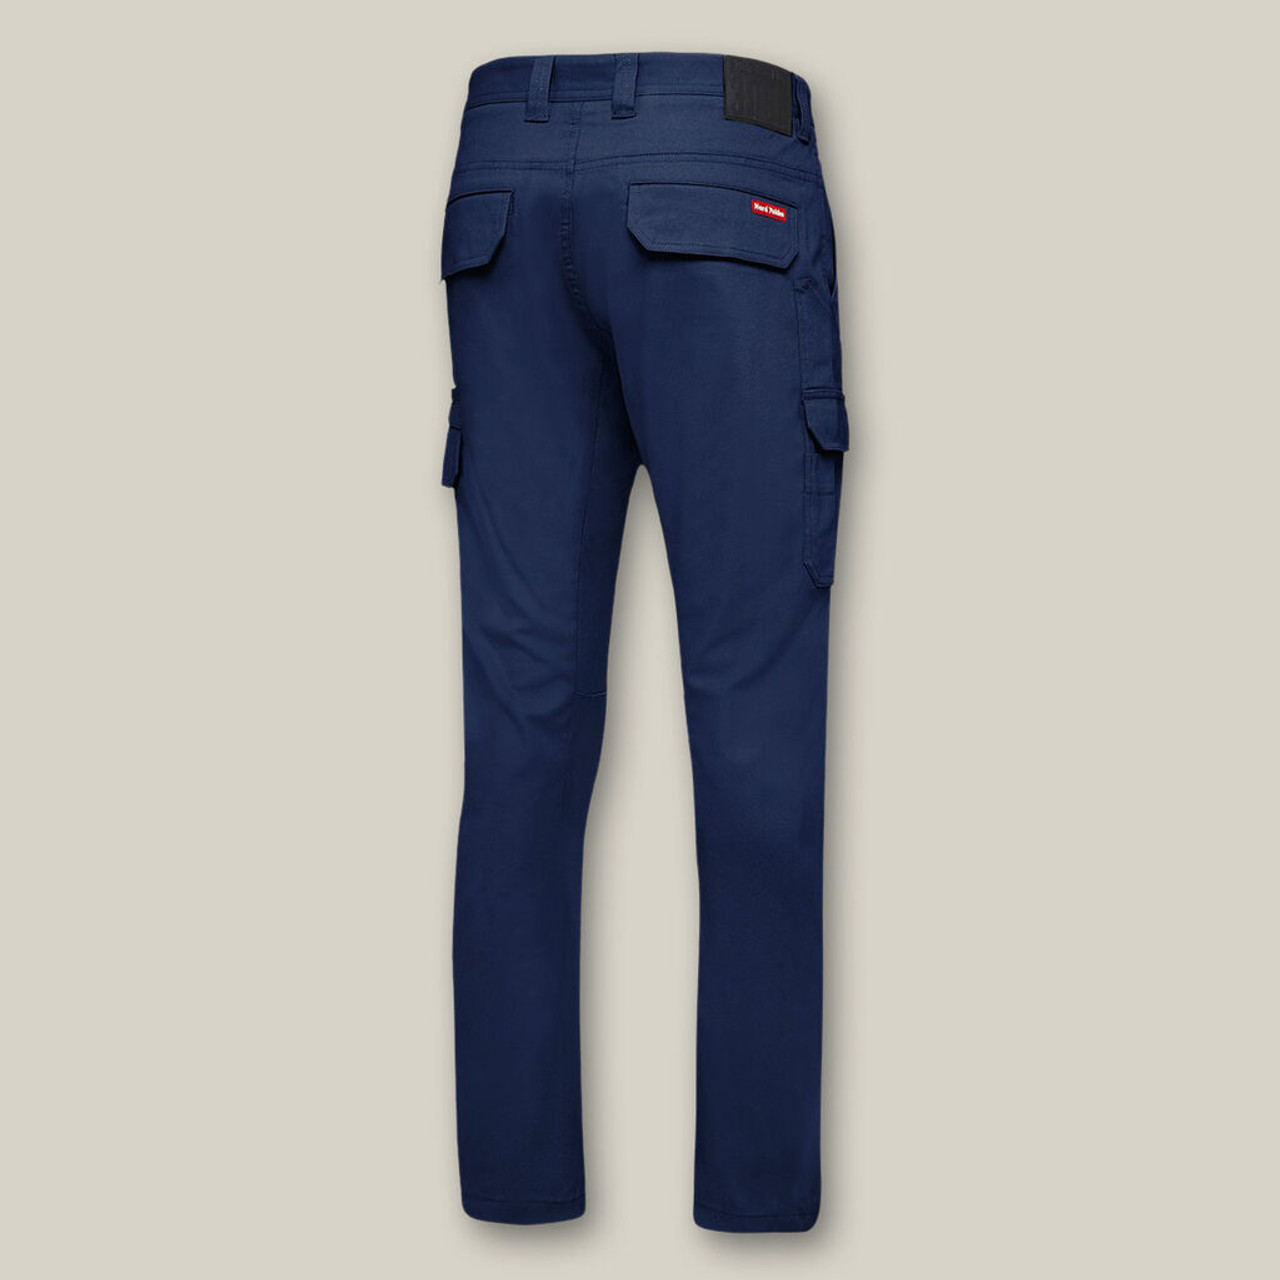 2x Hard Yakka Cargo Cuff Work Pants Workwear Elastic Cuffed 3056 Y02340  Stretch  eBay